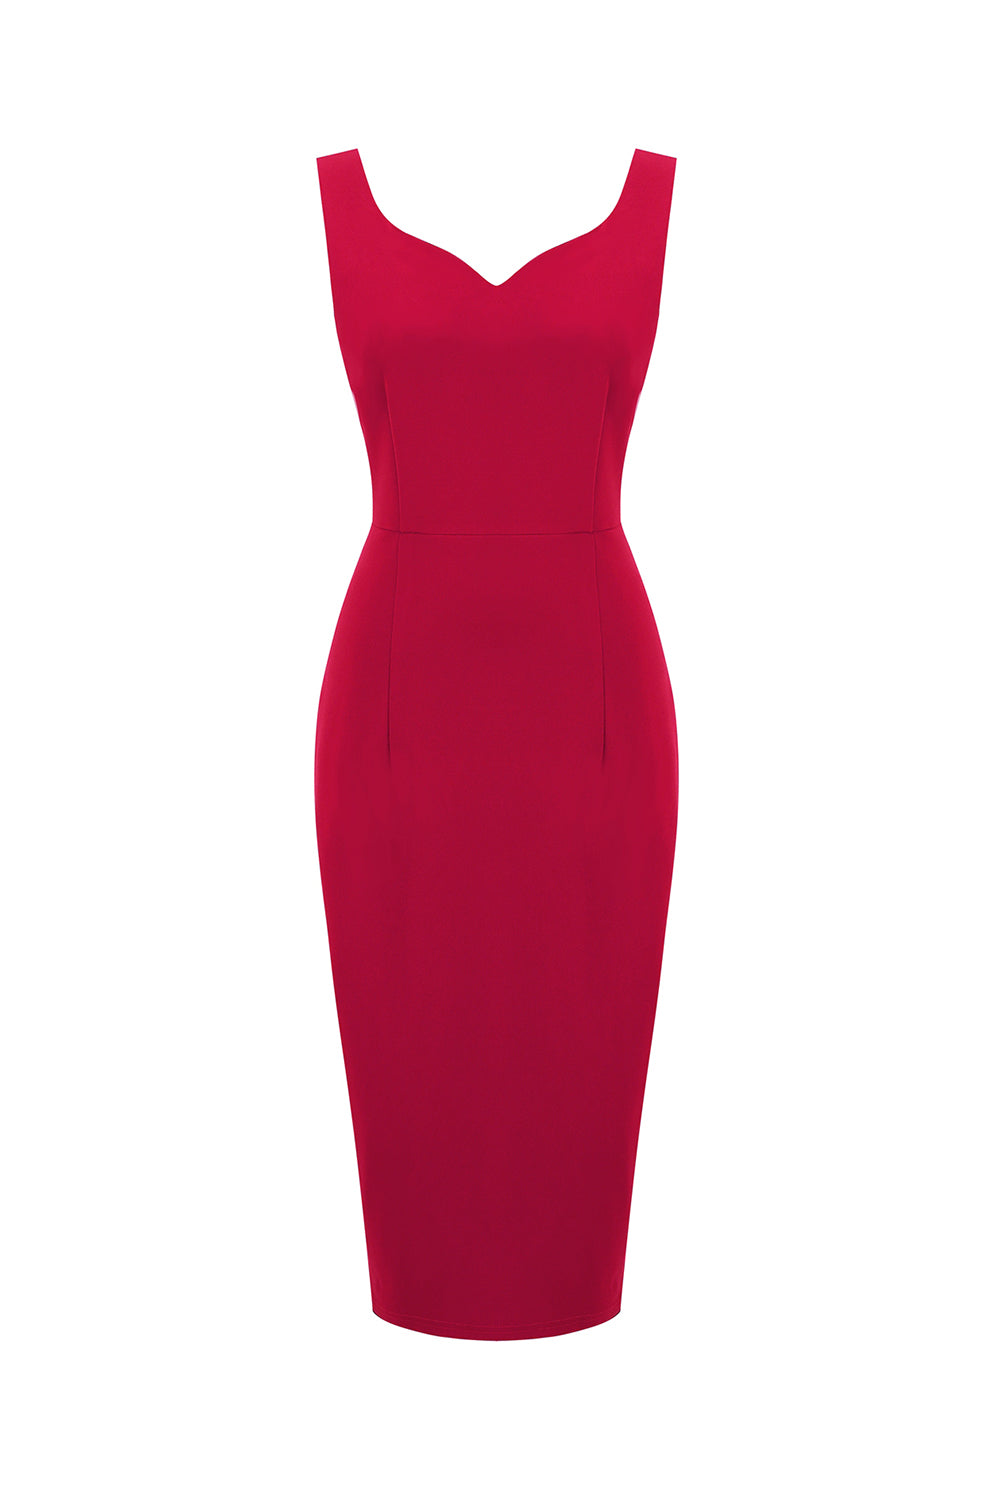 Rotes Bodycon Vintage Kleid aus den 1960er Jahren